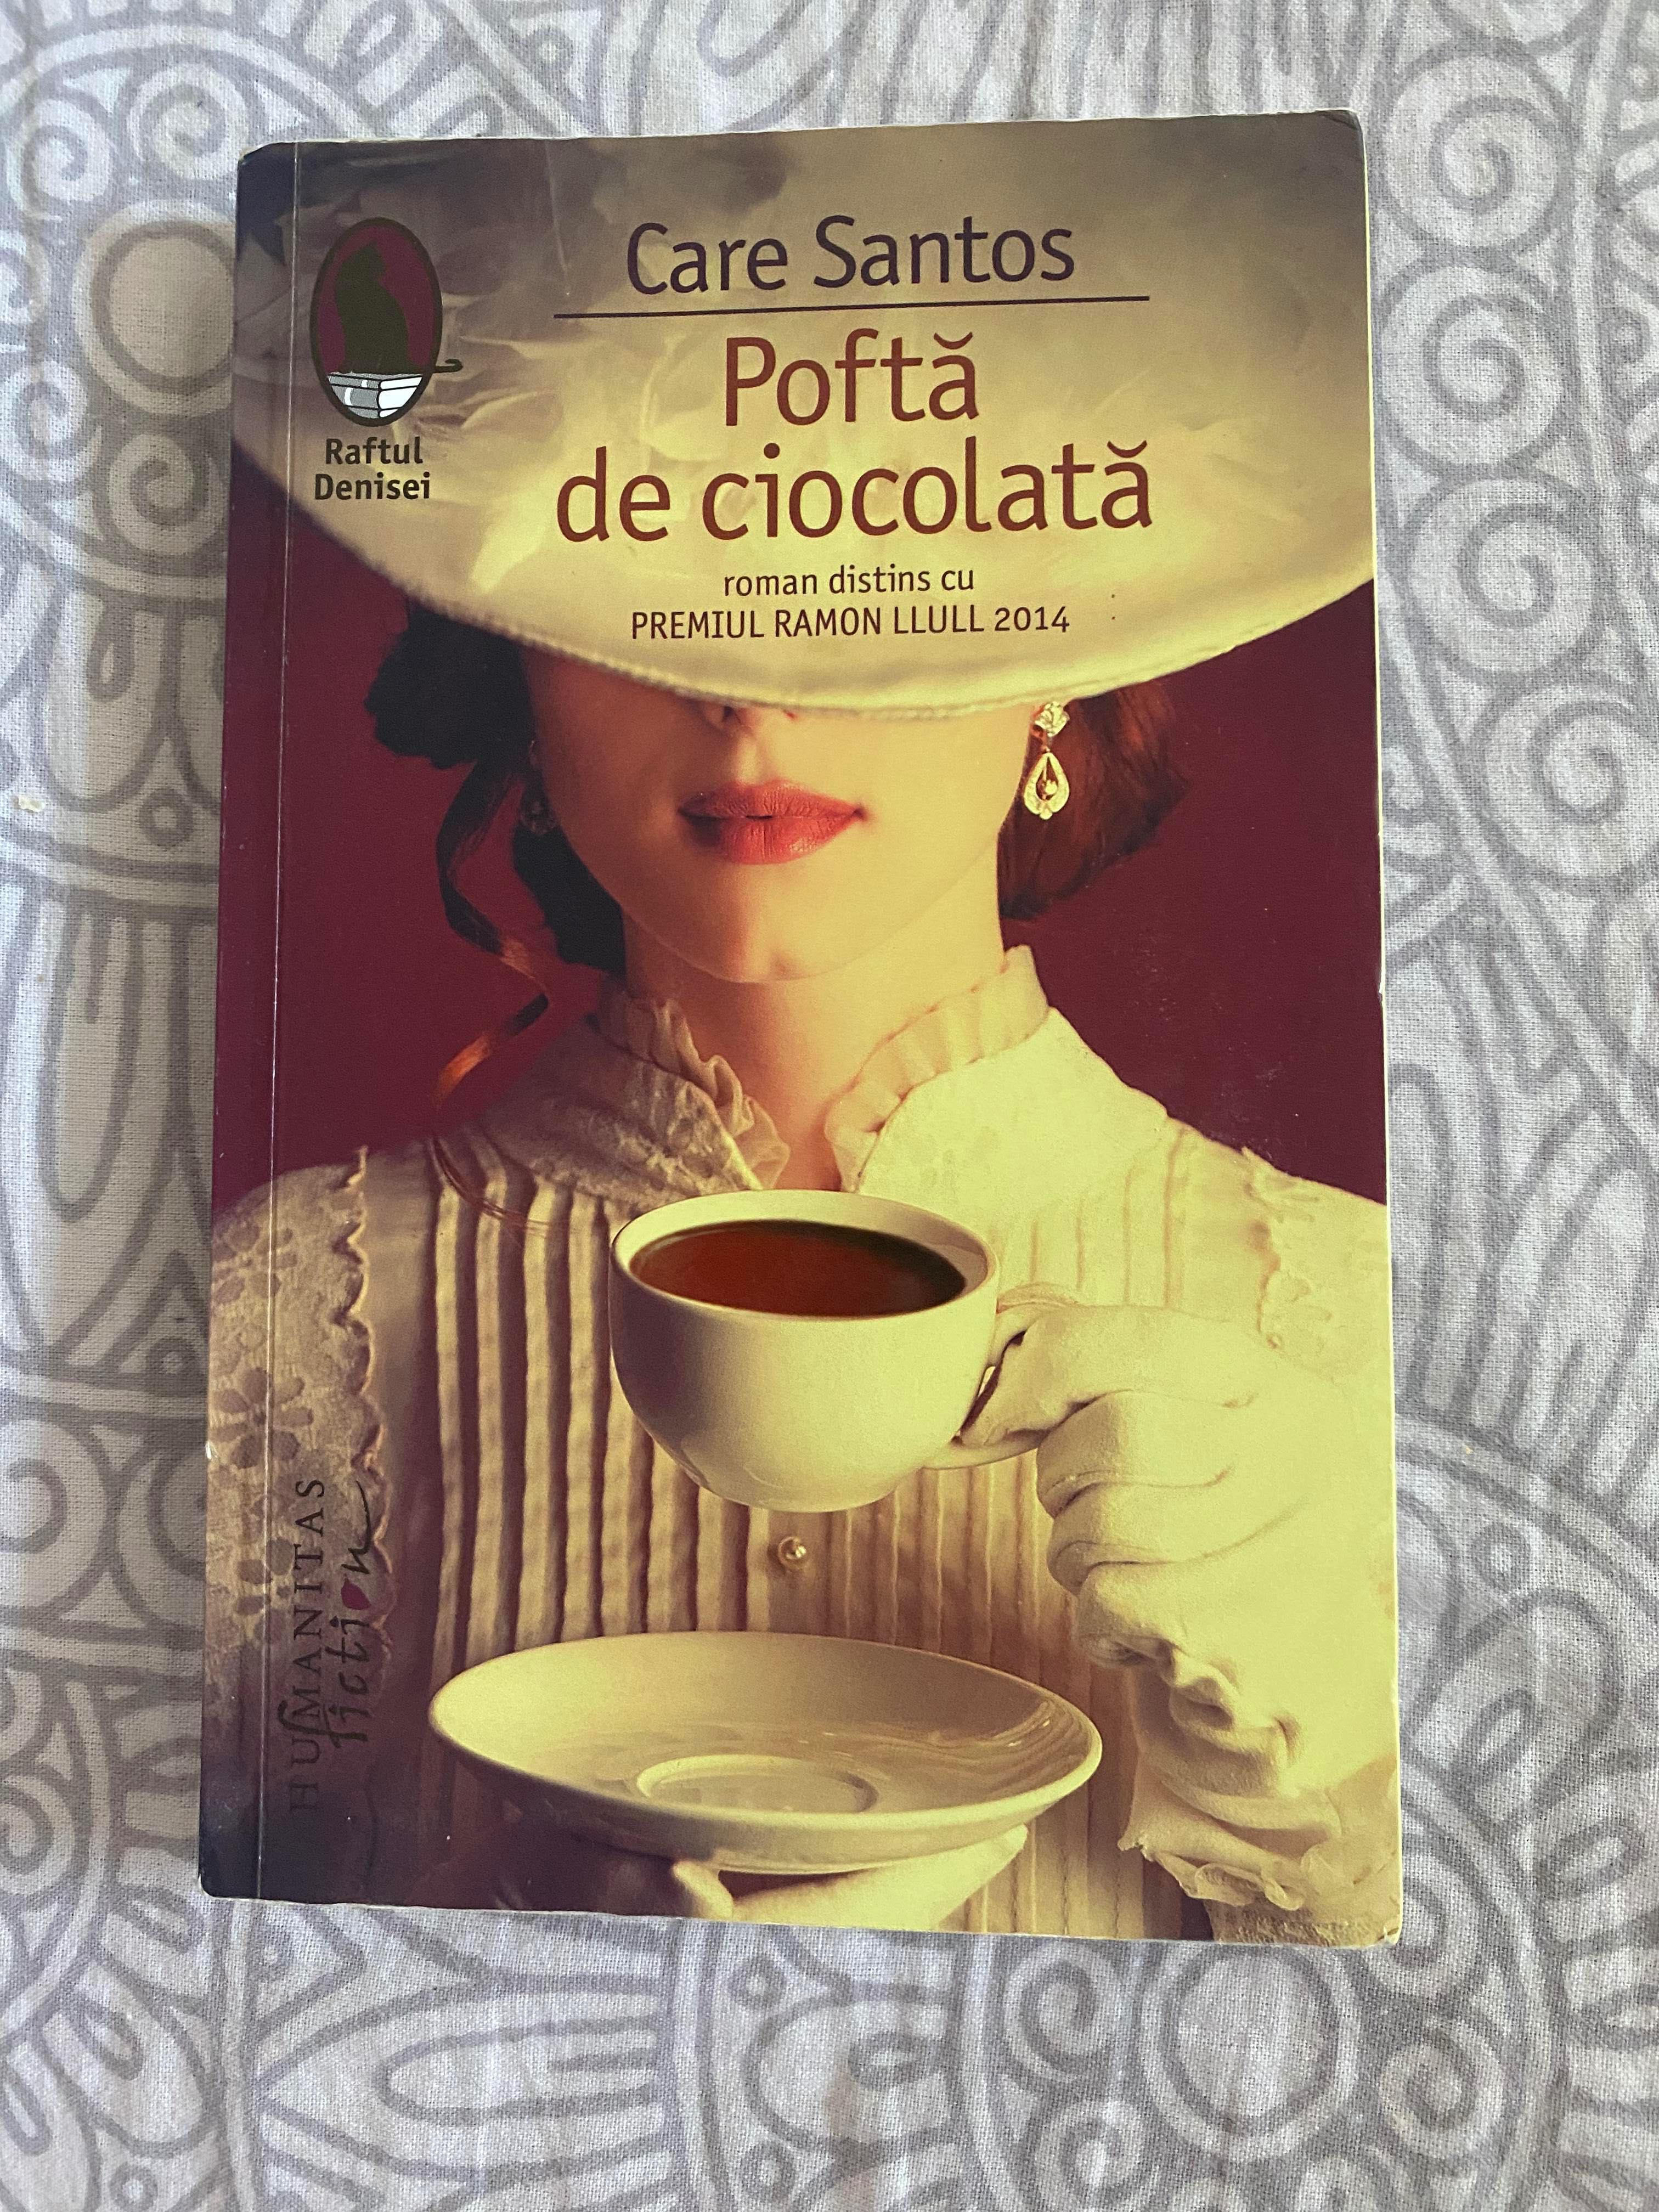 Carte - Pofta de ciocolata - Care Santos